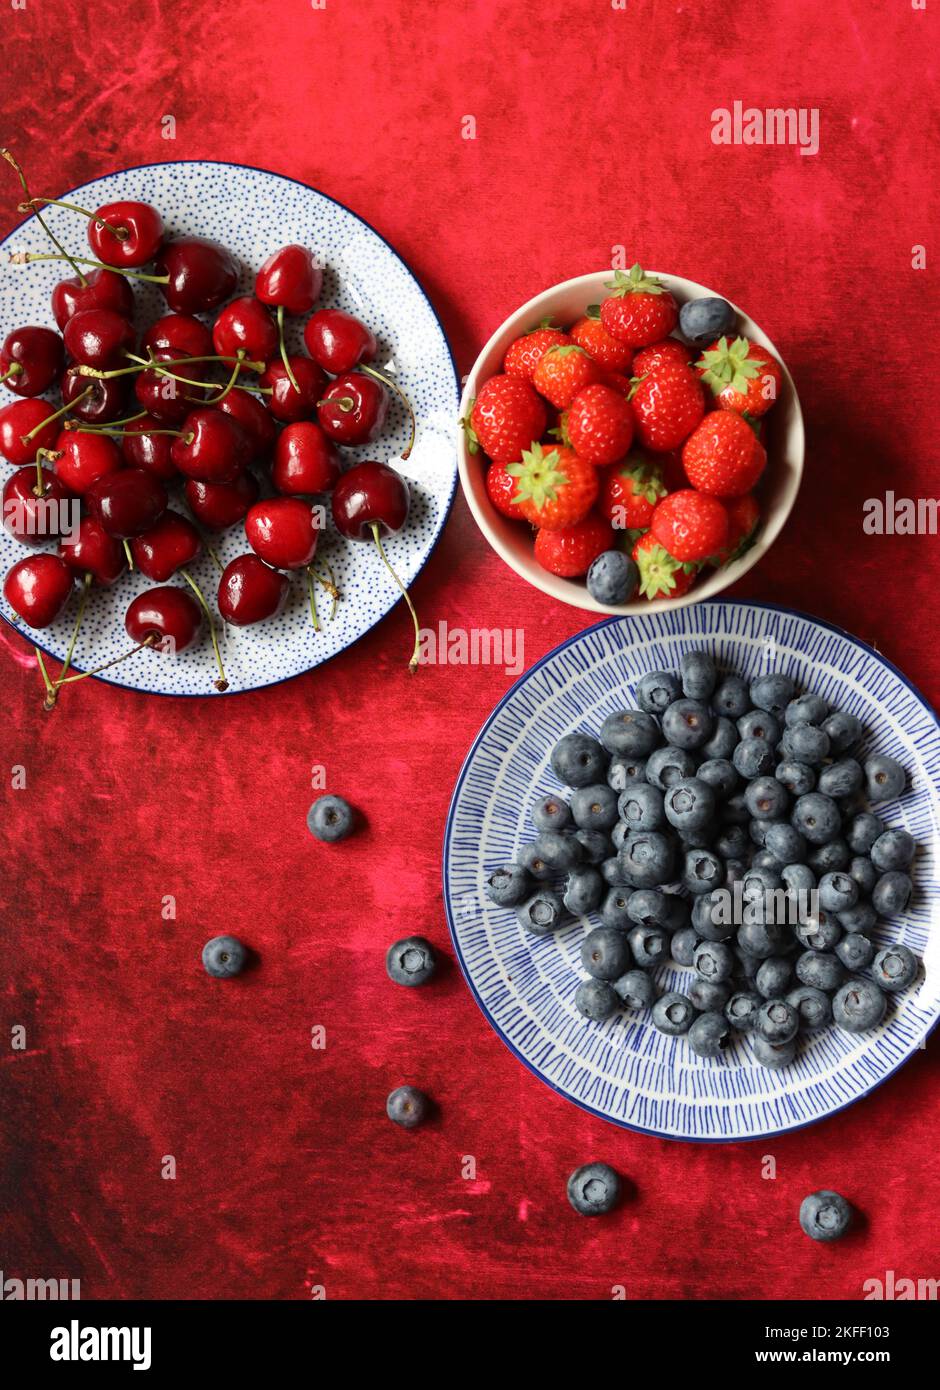 Sommerstille mit frischen Beeren auf Keramikplatten. Foto von oben mit Bio-Kirsche, Heidelbeere und Erdbeere. Konzept der gesunden Ernährung. Stockfoto